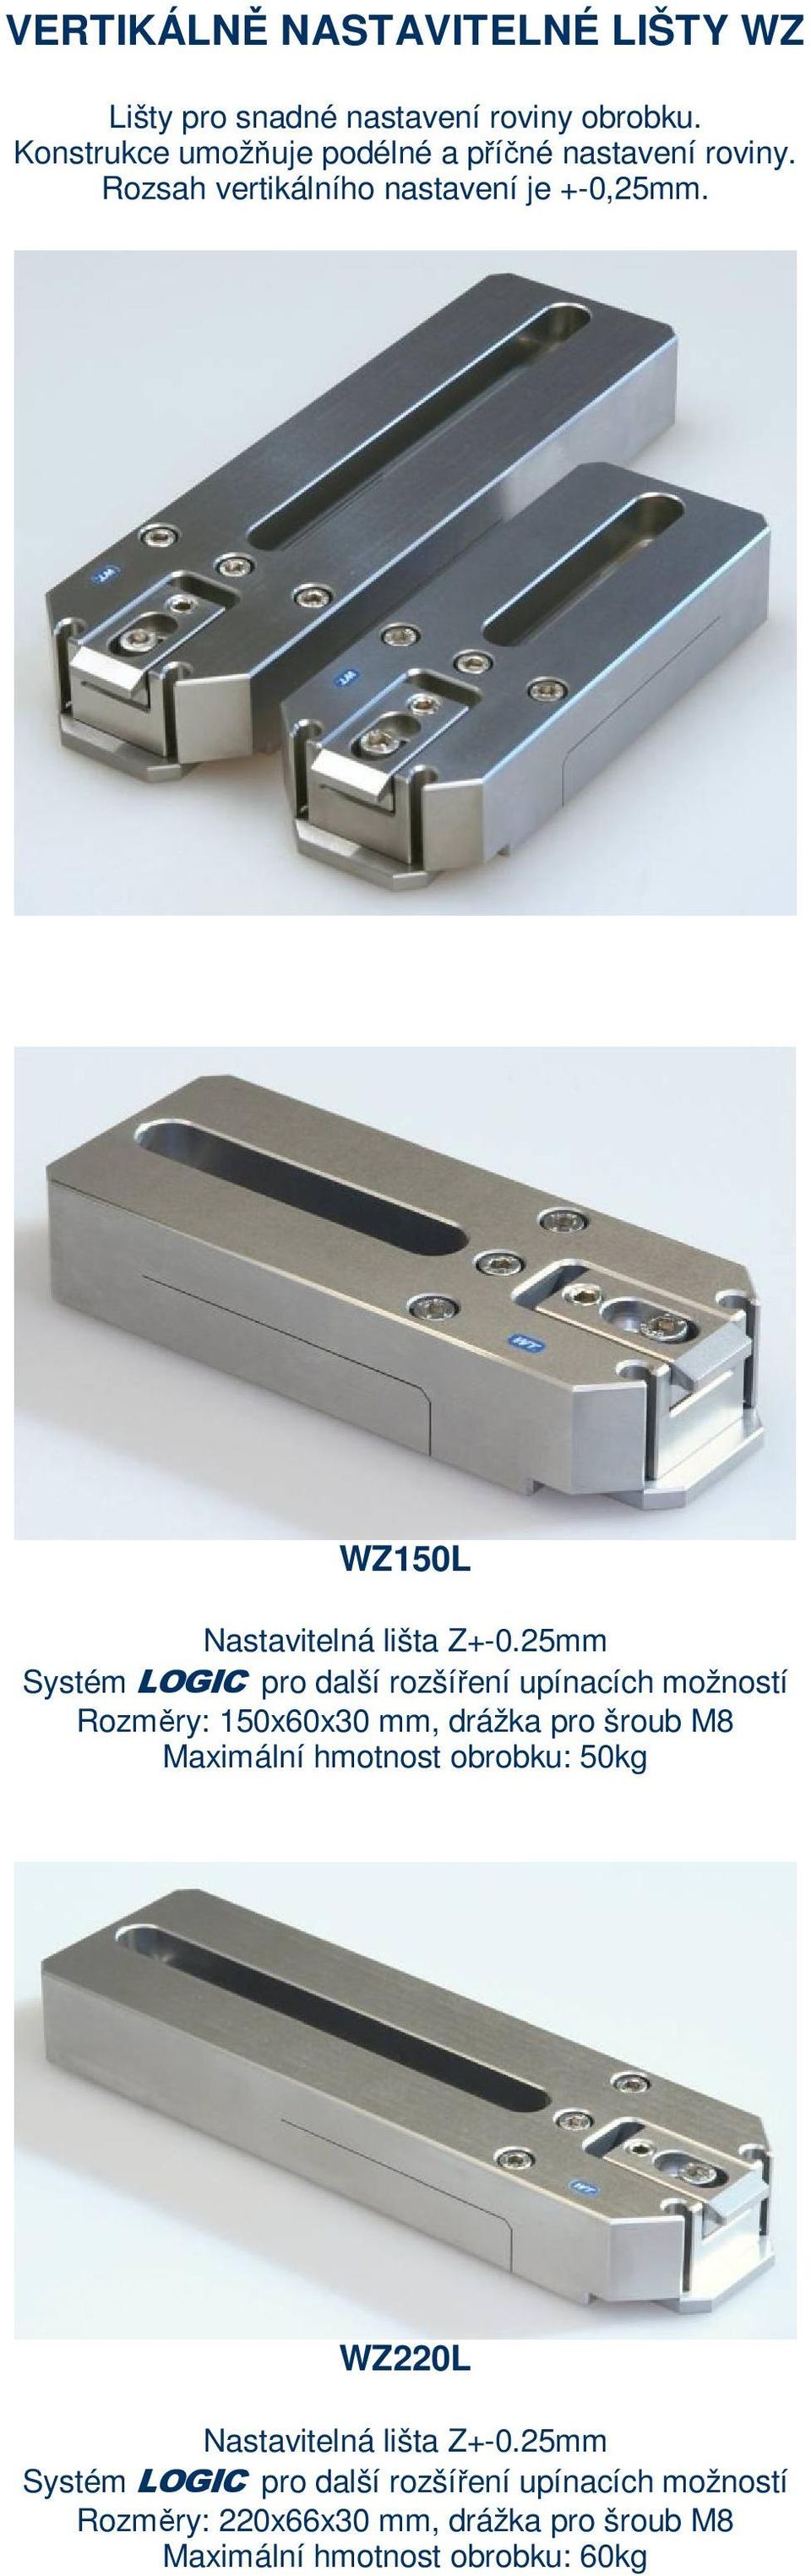 WZ150L Nastavitelná lišta Z+-0.